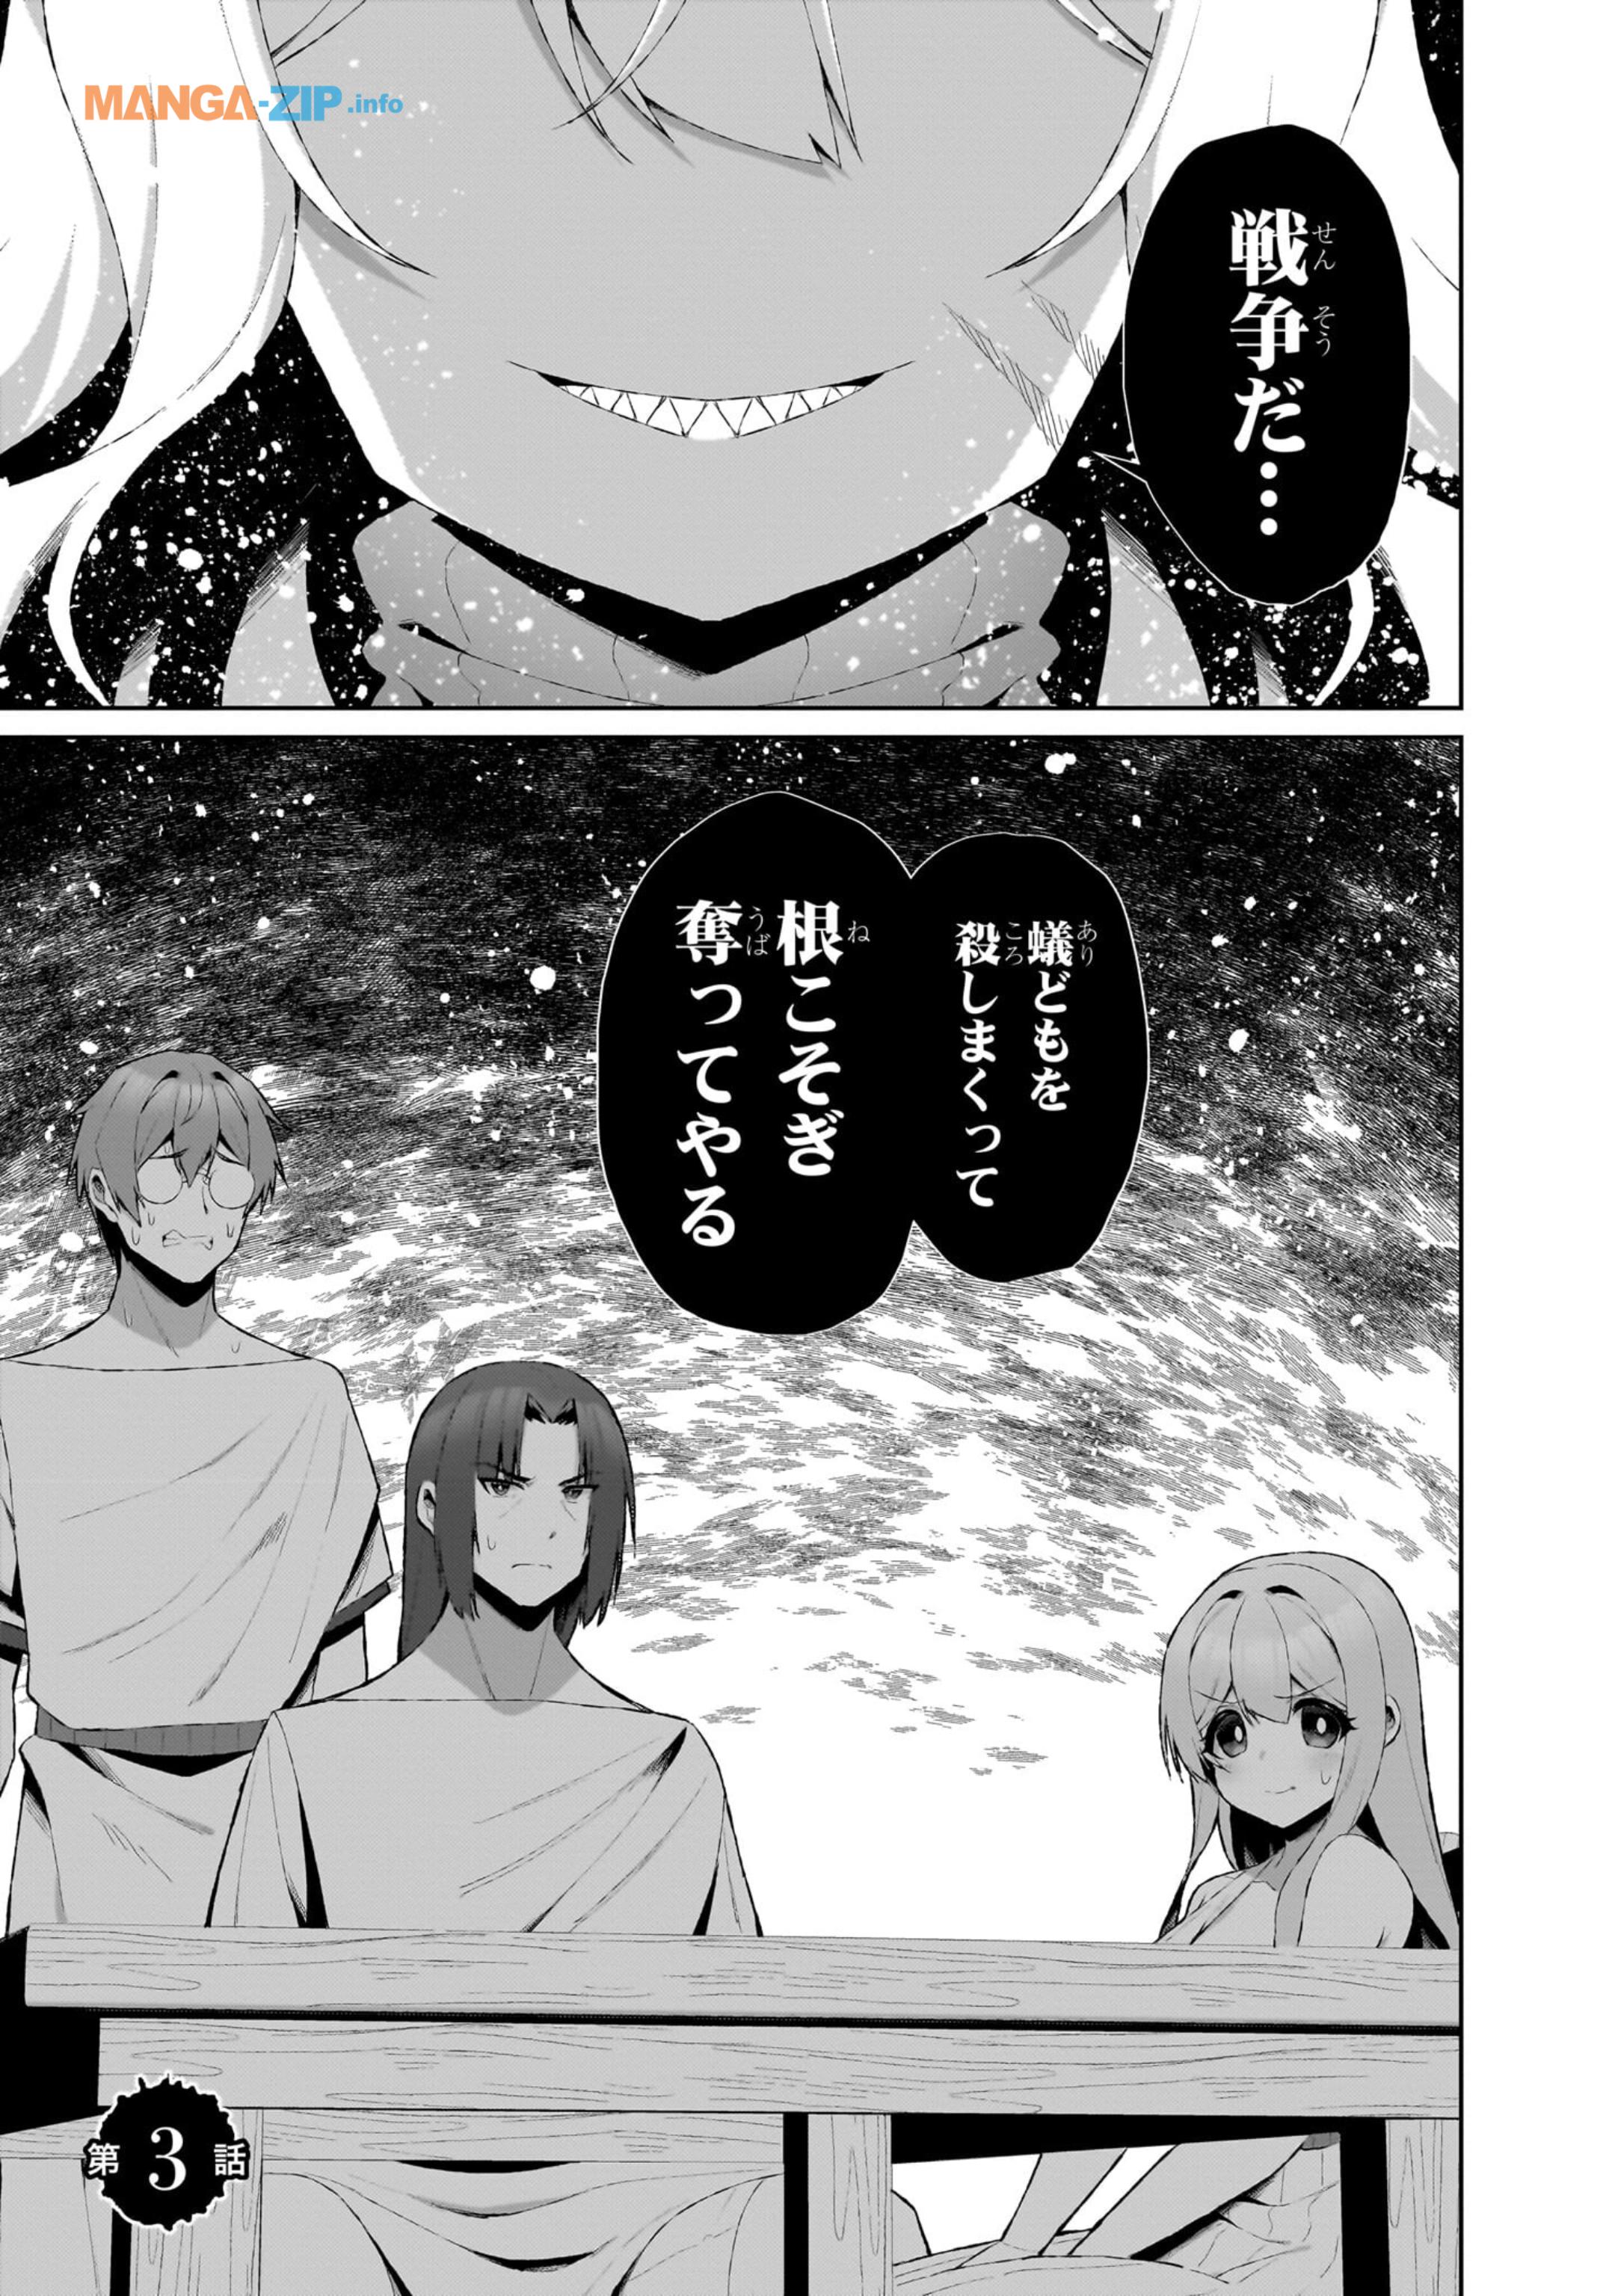 Nogaku Hakase no Isekai Muso Kinki no Chishiki de Kizuku Monster Musume Harem - Chapter 3 - Page 1